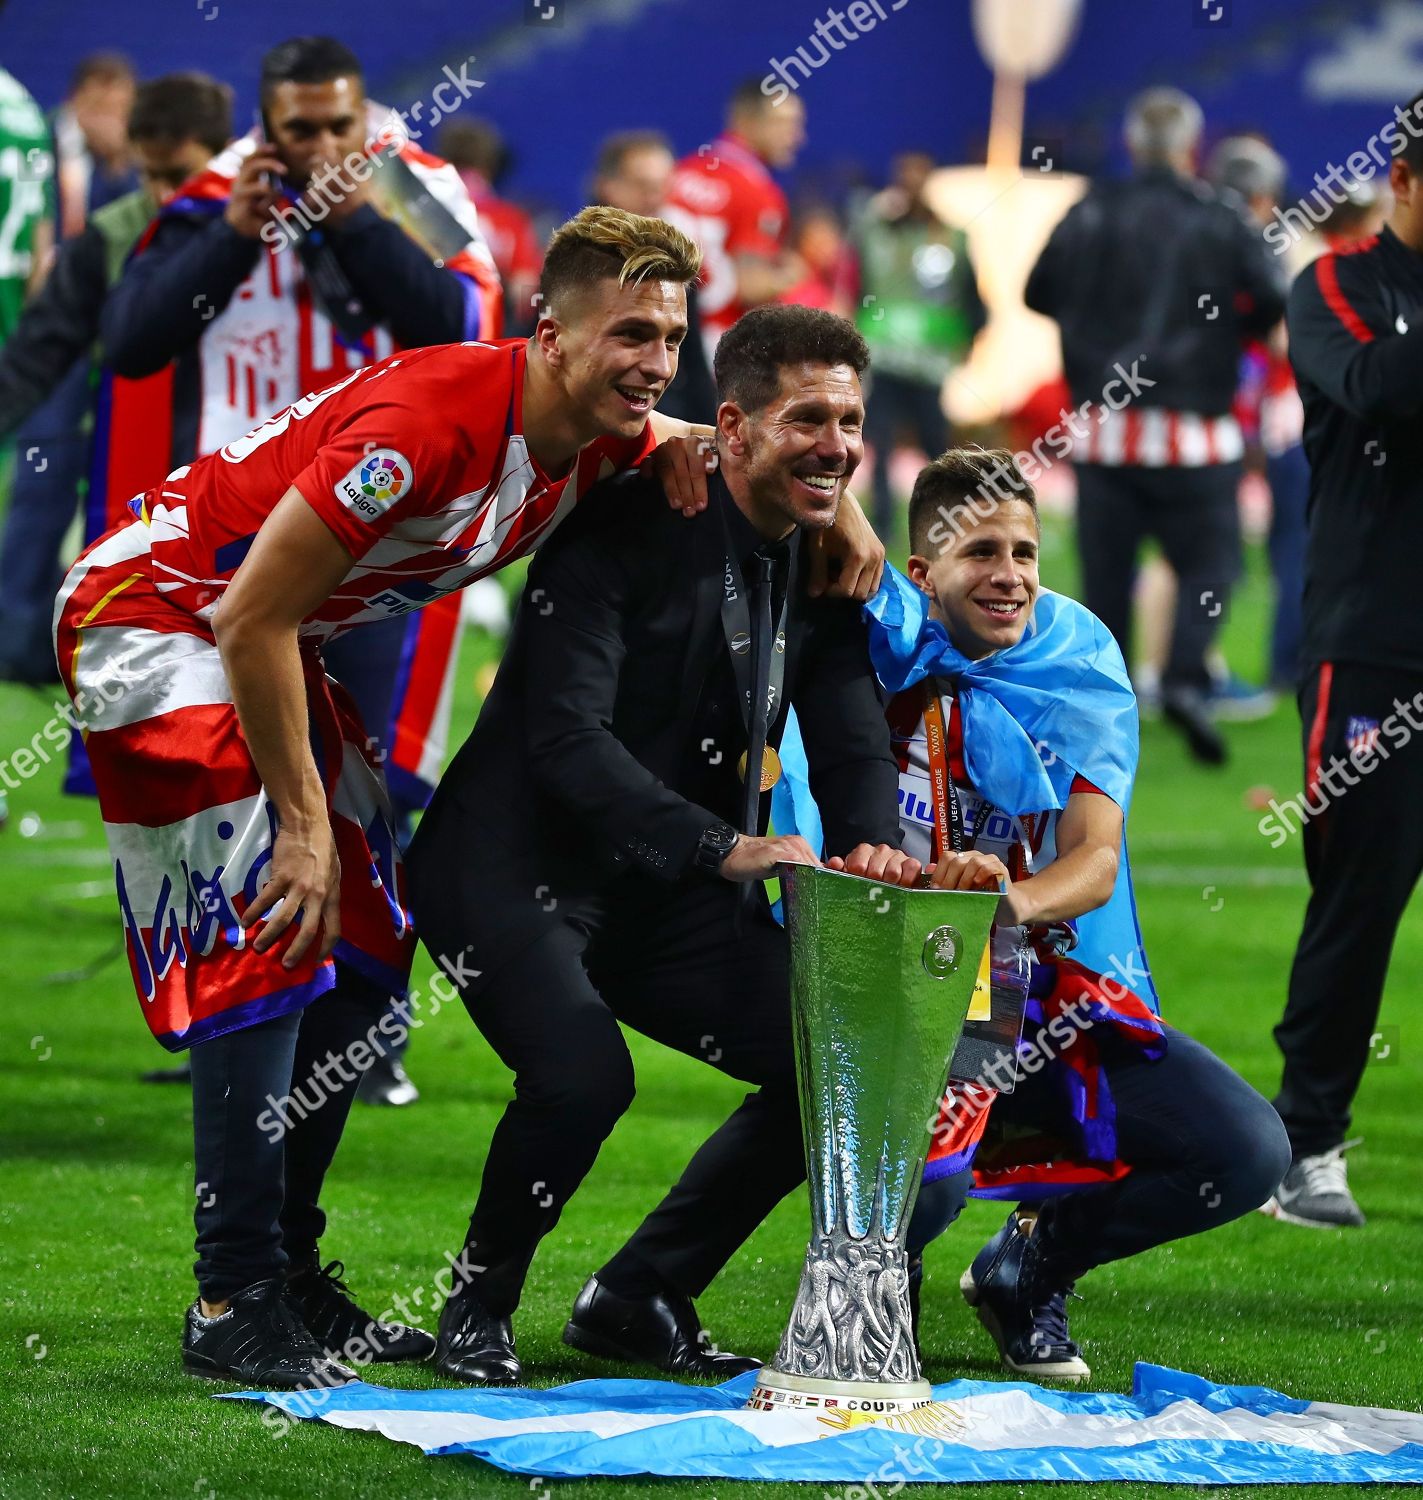  El Atlético de Madrid, campeón de la UEFA Europa League 2018 - Página 6 Marseille-v-atletico-madrid-uefa-europa-league-final-stade-de-lyon-lyon-france-shutterstock-editorial-9677658fp